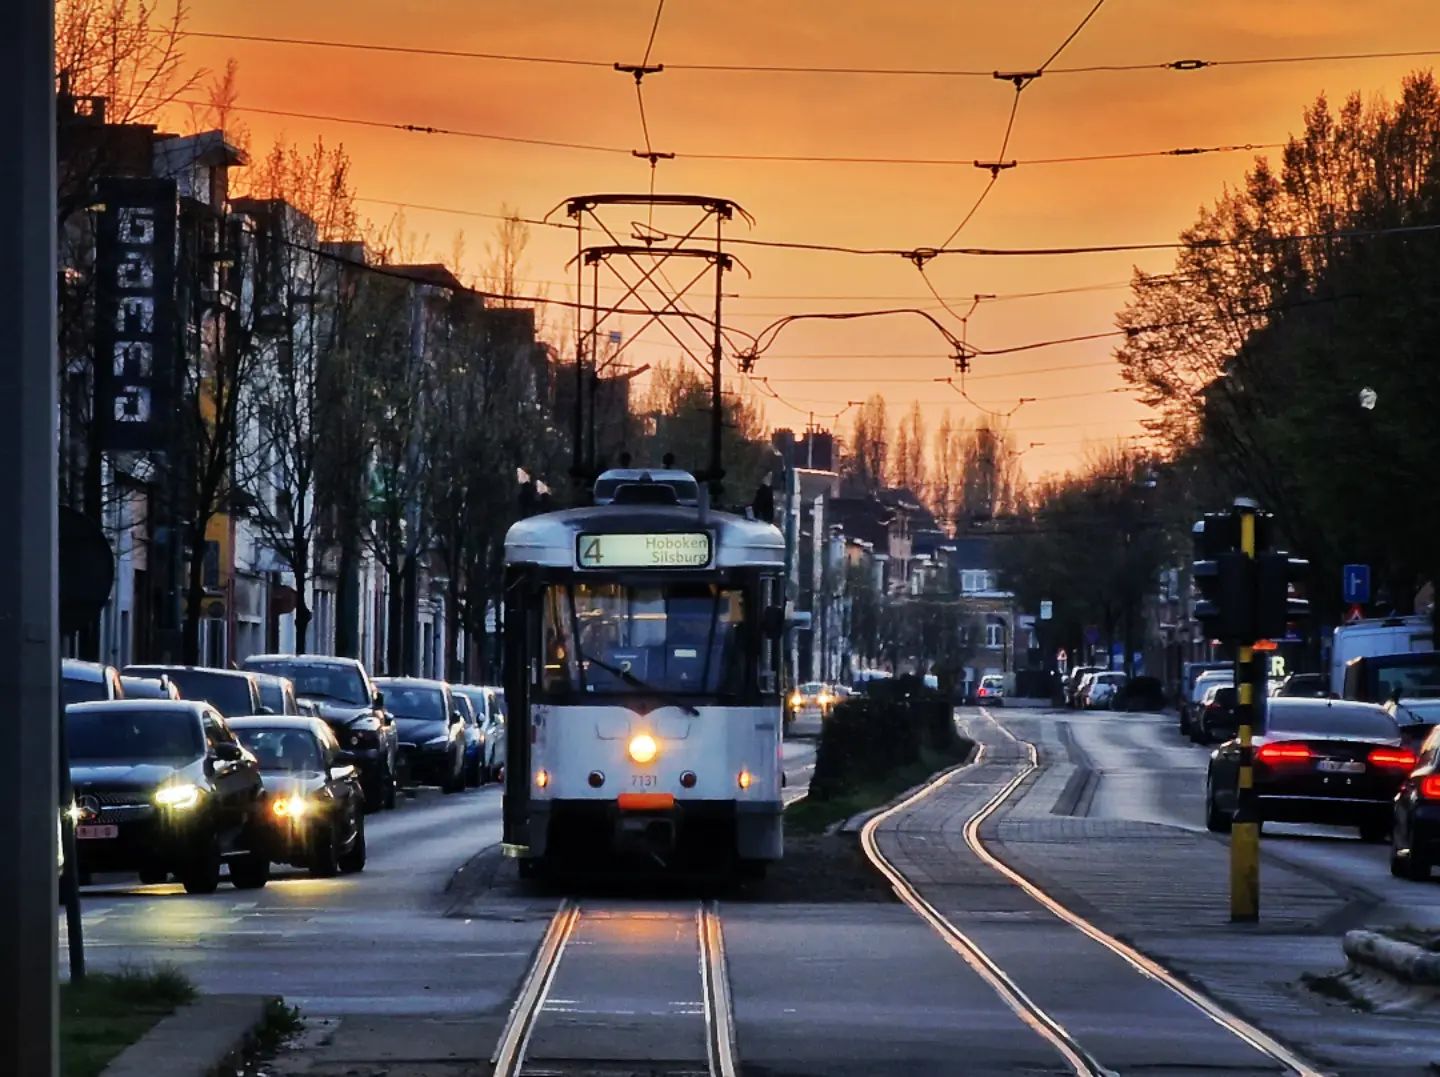 Lijn 4 Tram Antwerpen, fotografie Kevin van der Schouw (lijn 7 PCC tram Antwerpen - Copyright Kevin van der Schouw (https://www.instagram.com/kevintje_1212/))